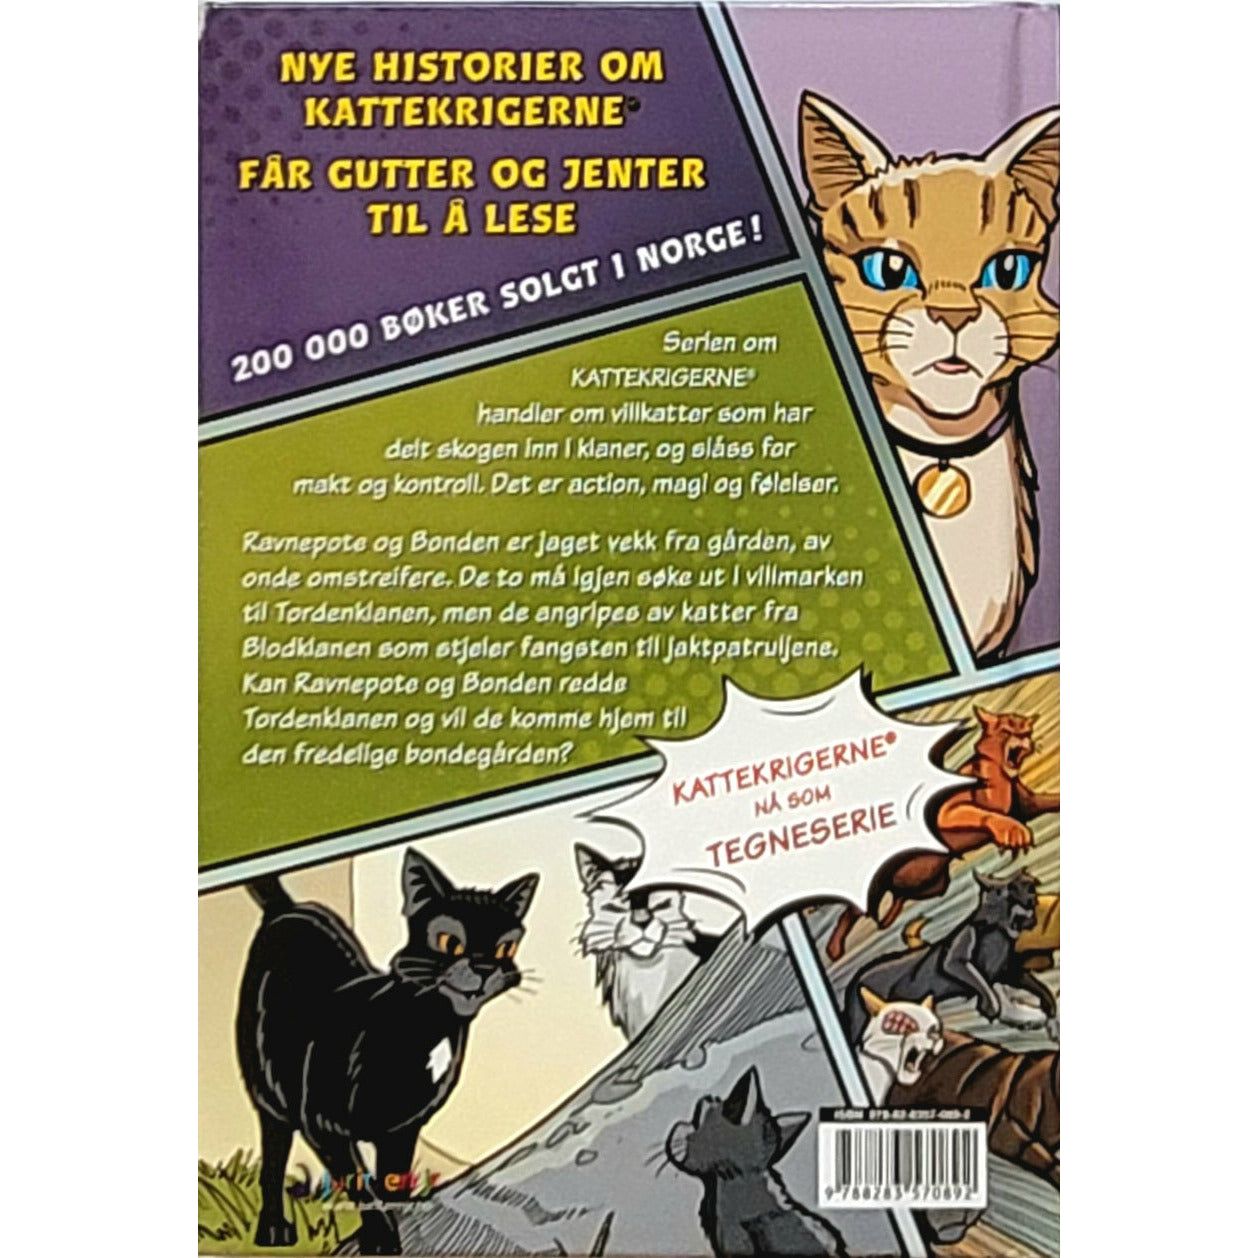 Hunter, Erin: En klan i knipe - Kattekrigerne tegneserie 1-2